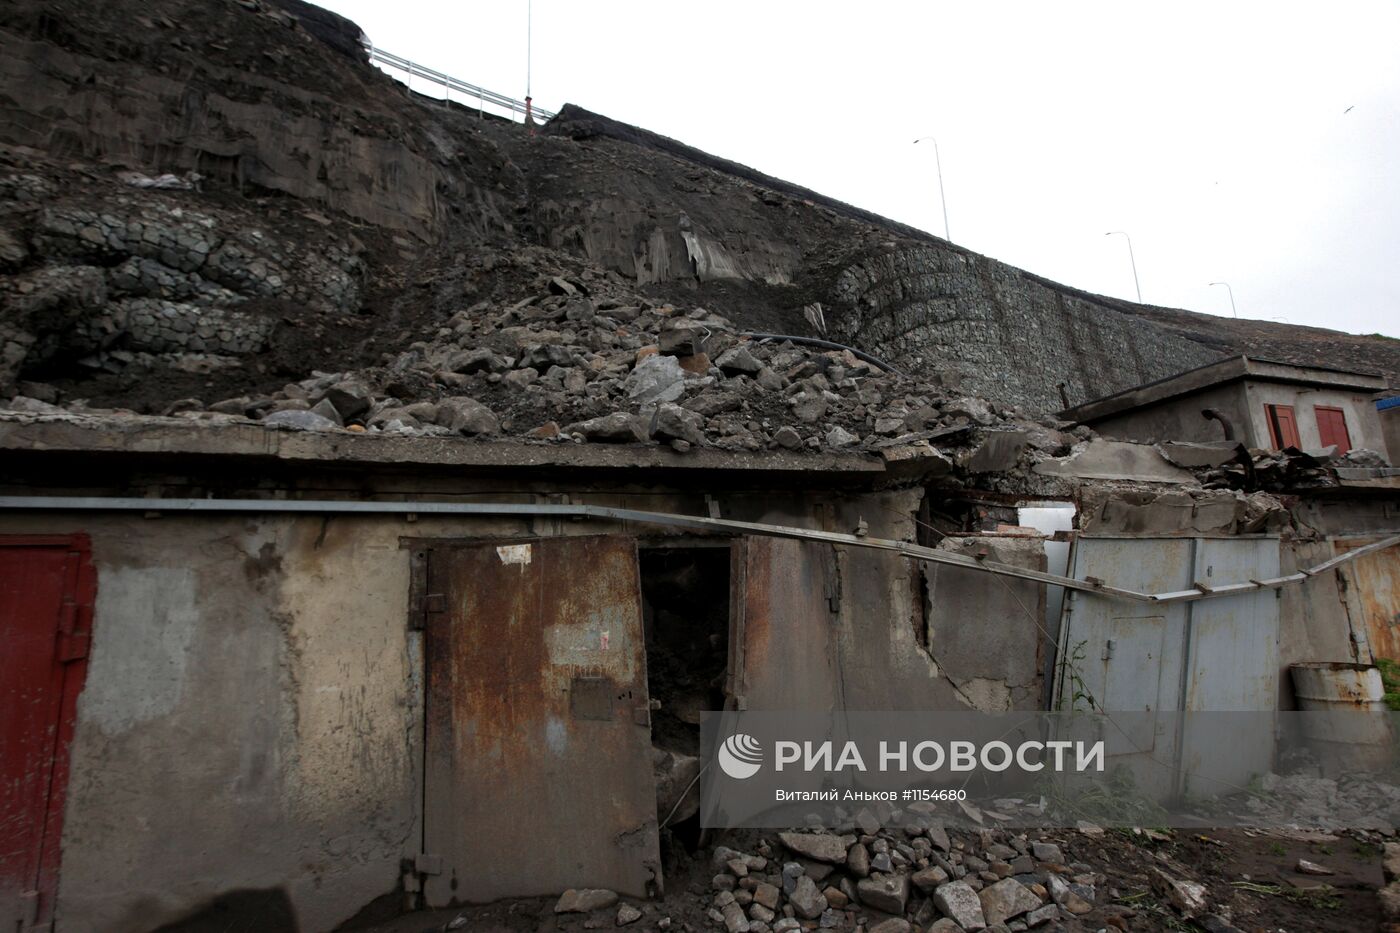 Обрушение подпорной стены трассы во Владивостоке